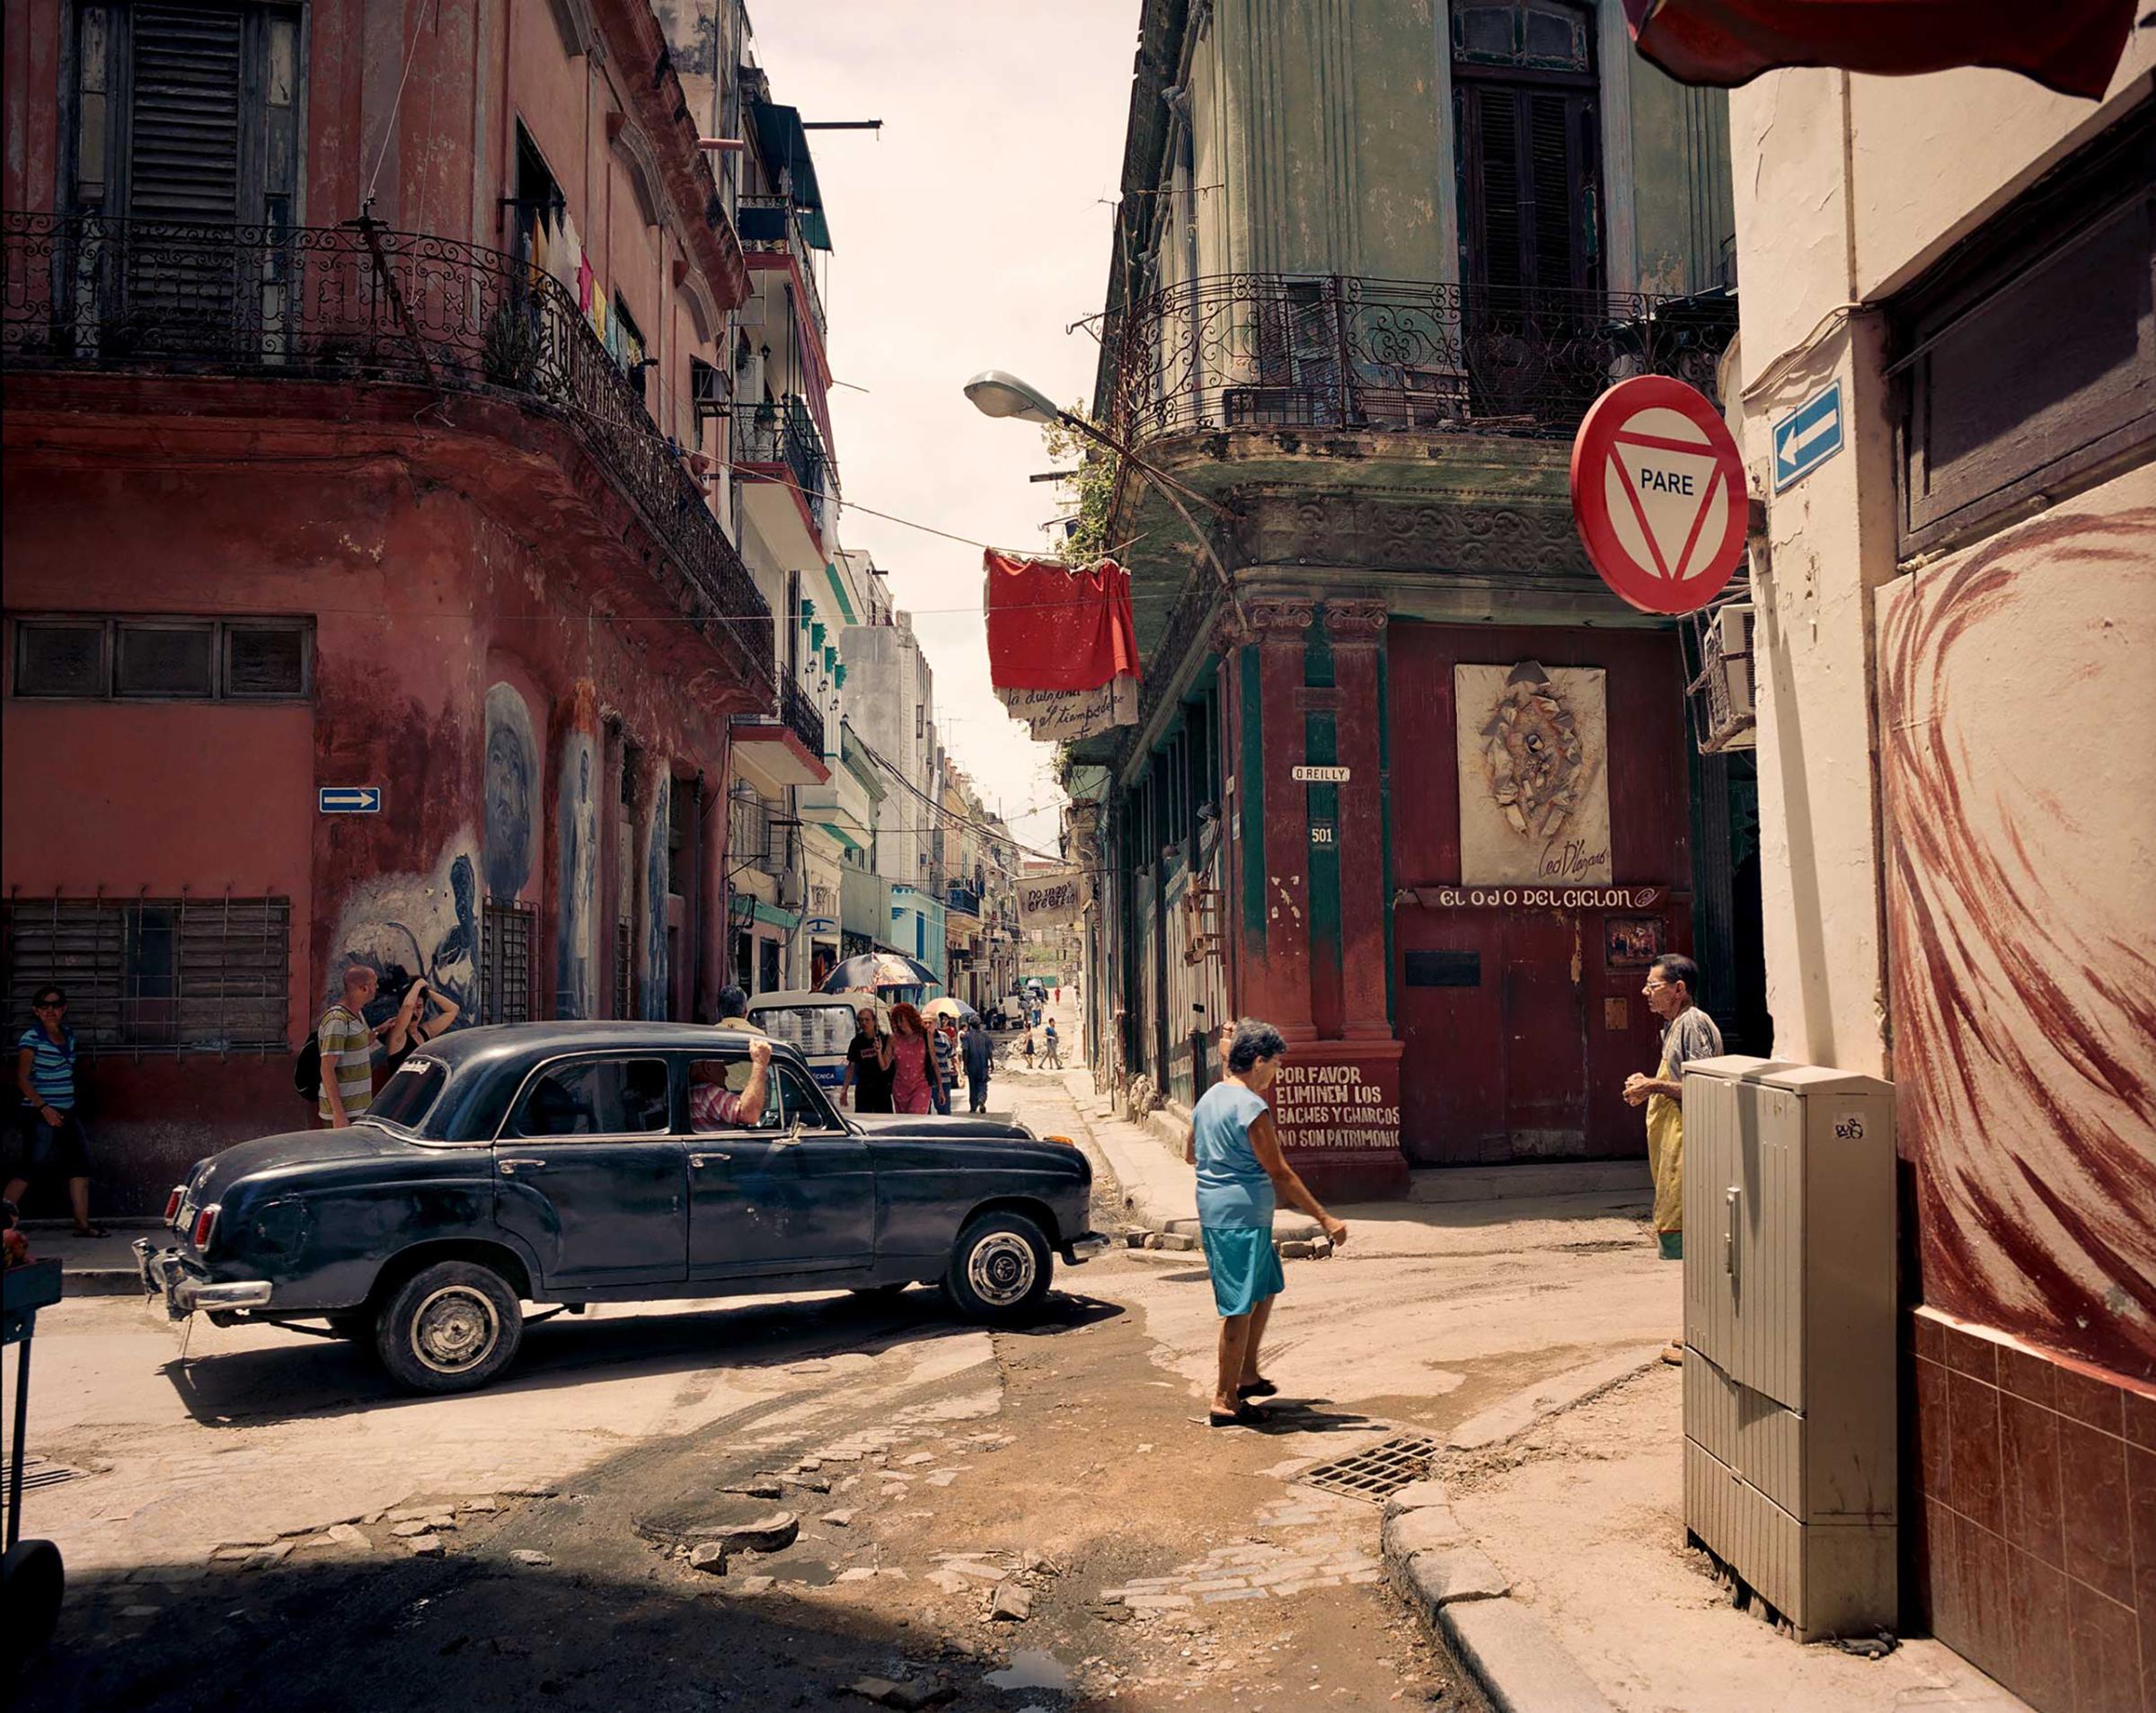 A street scene in Havana, Cuba. June 2015.